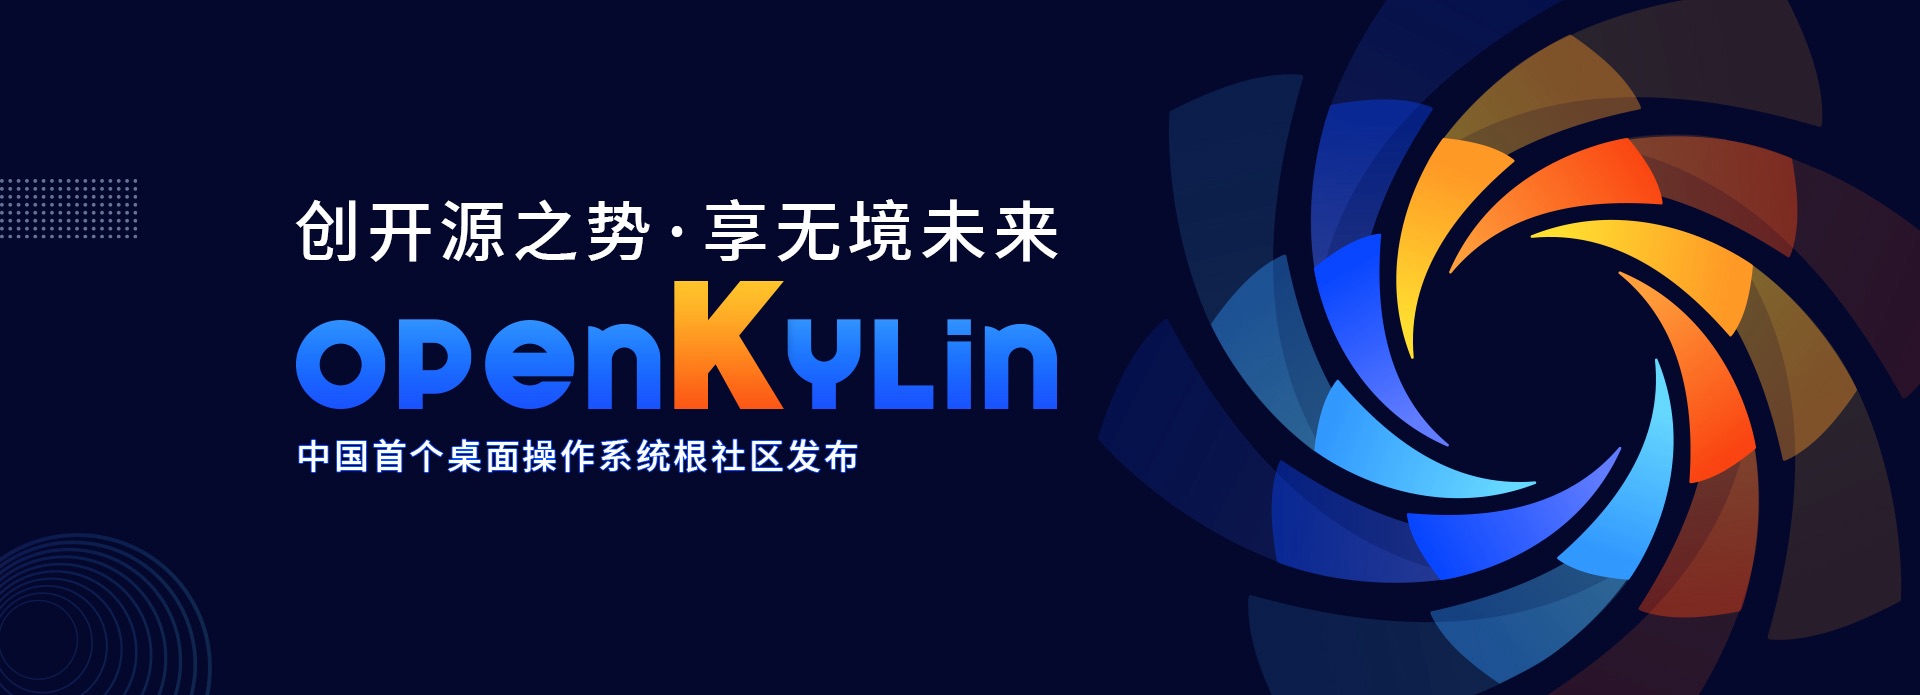 银河麒麟操作系统麒麟操作系统中标麒麟开放麒麟openkylin 麒麟软件官方网站